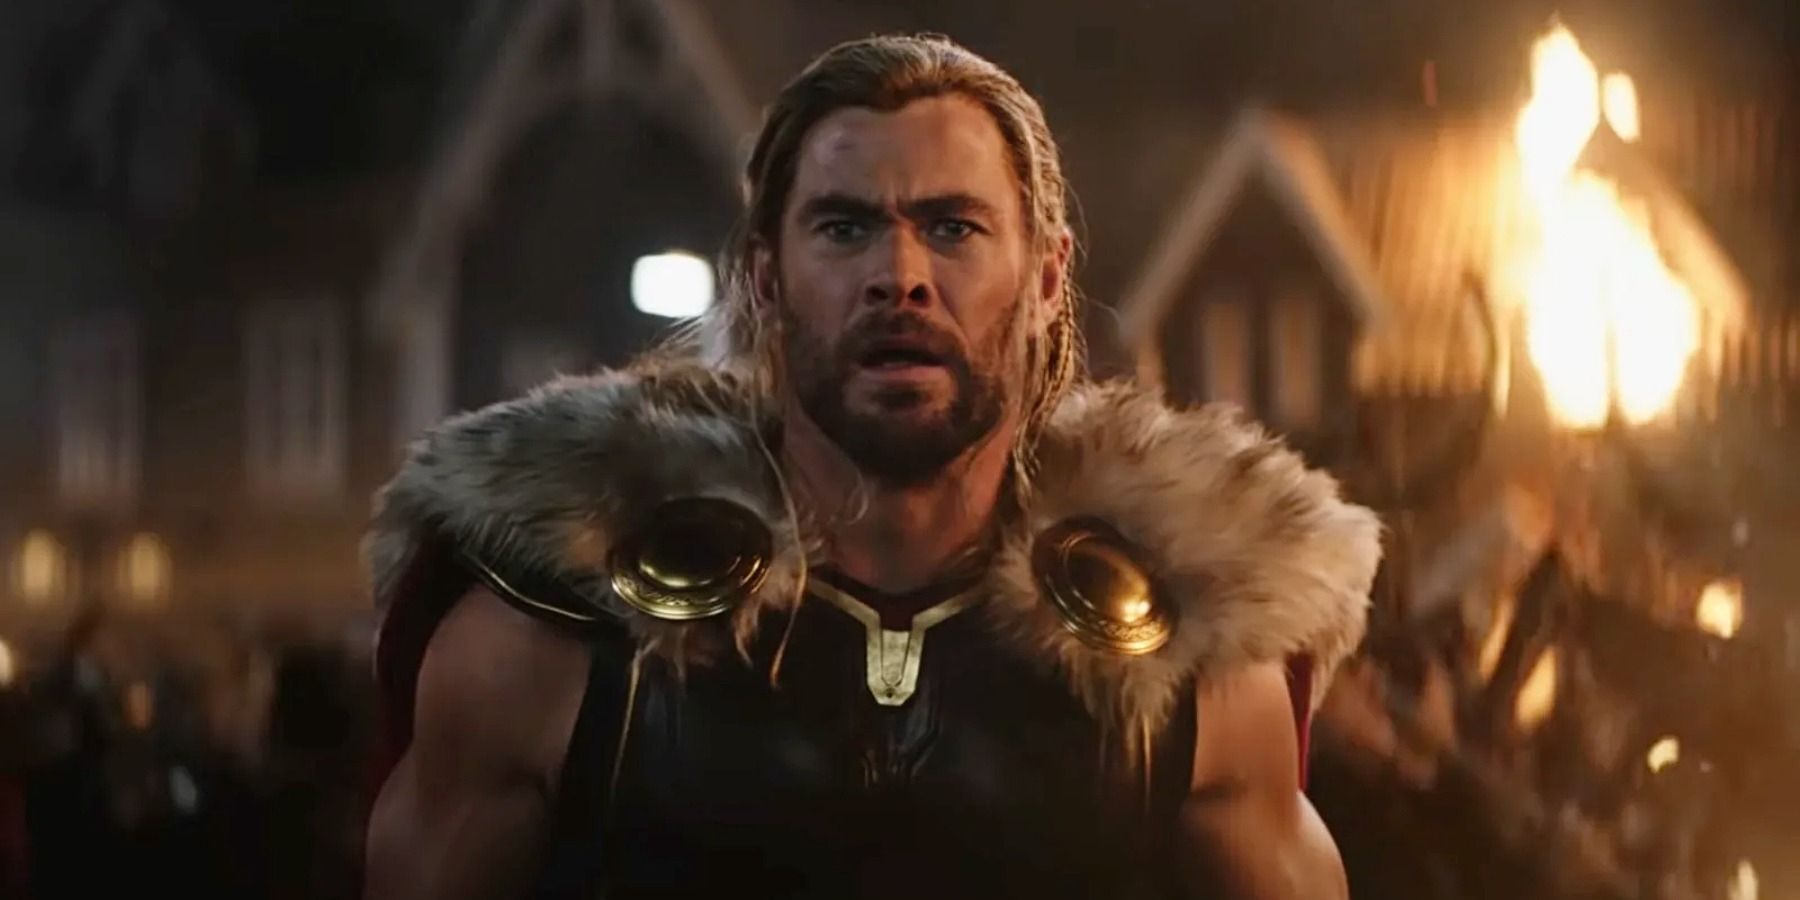 Chris Hemsworth as Thor surprised look